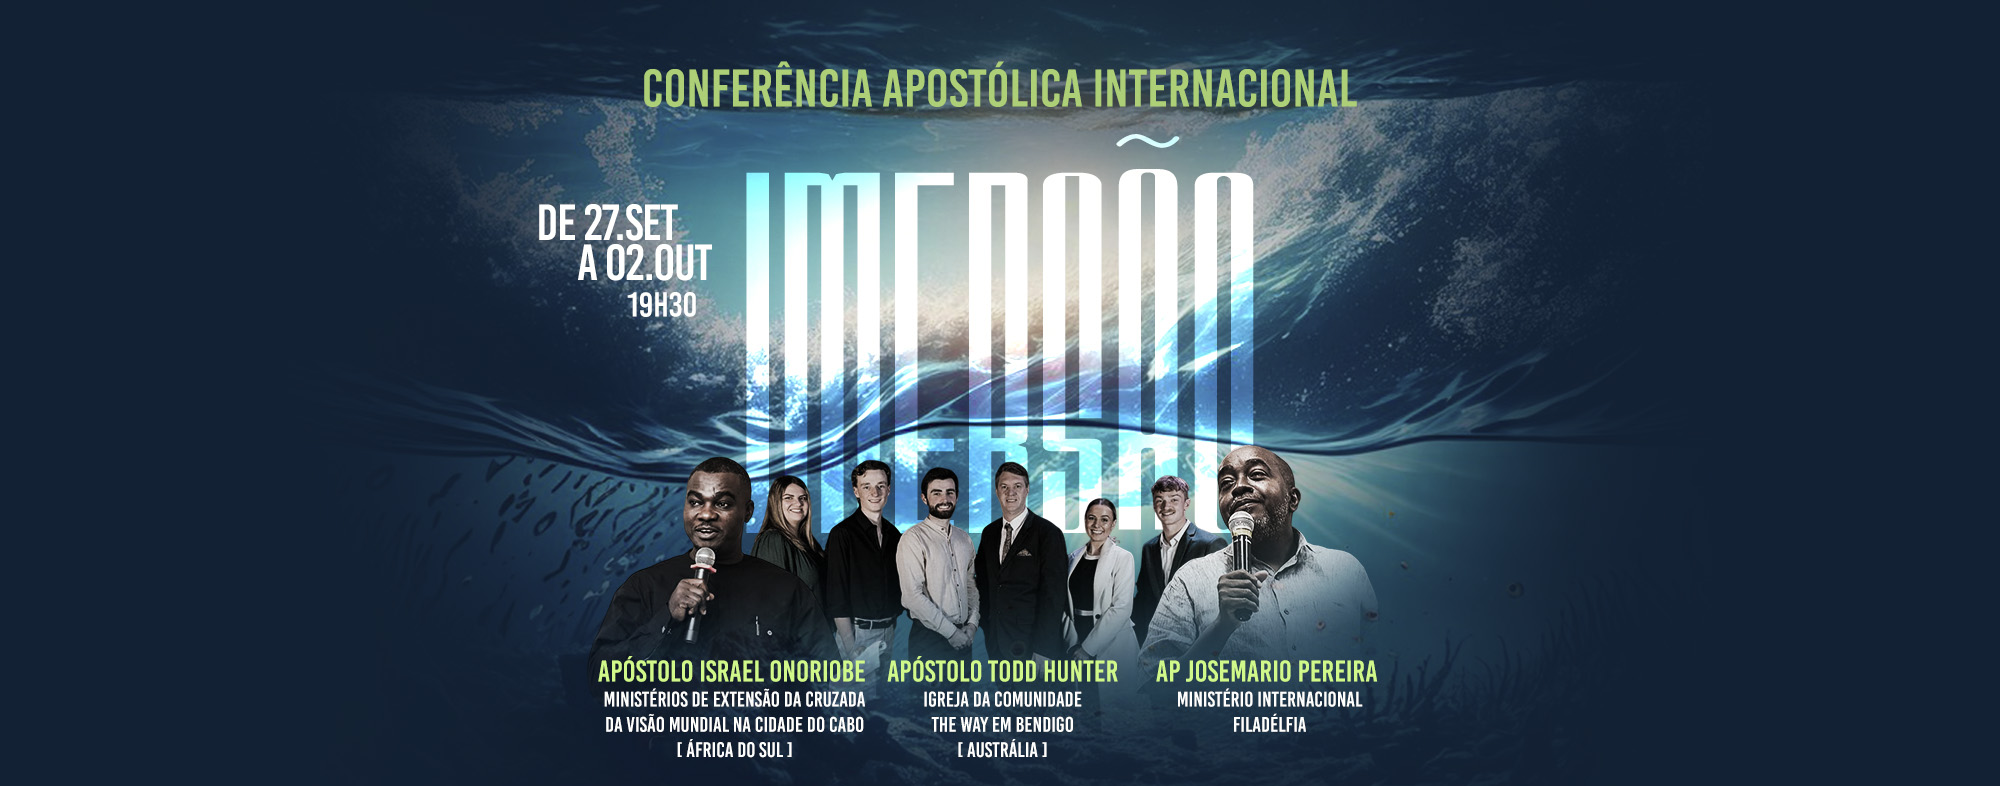 Conferência Apostólica Internacional Imersão